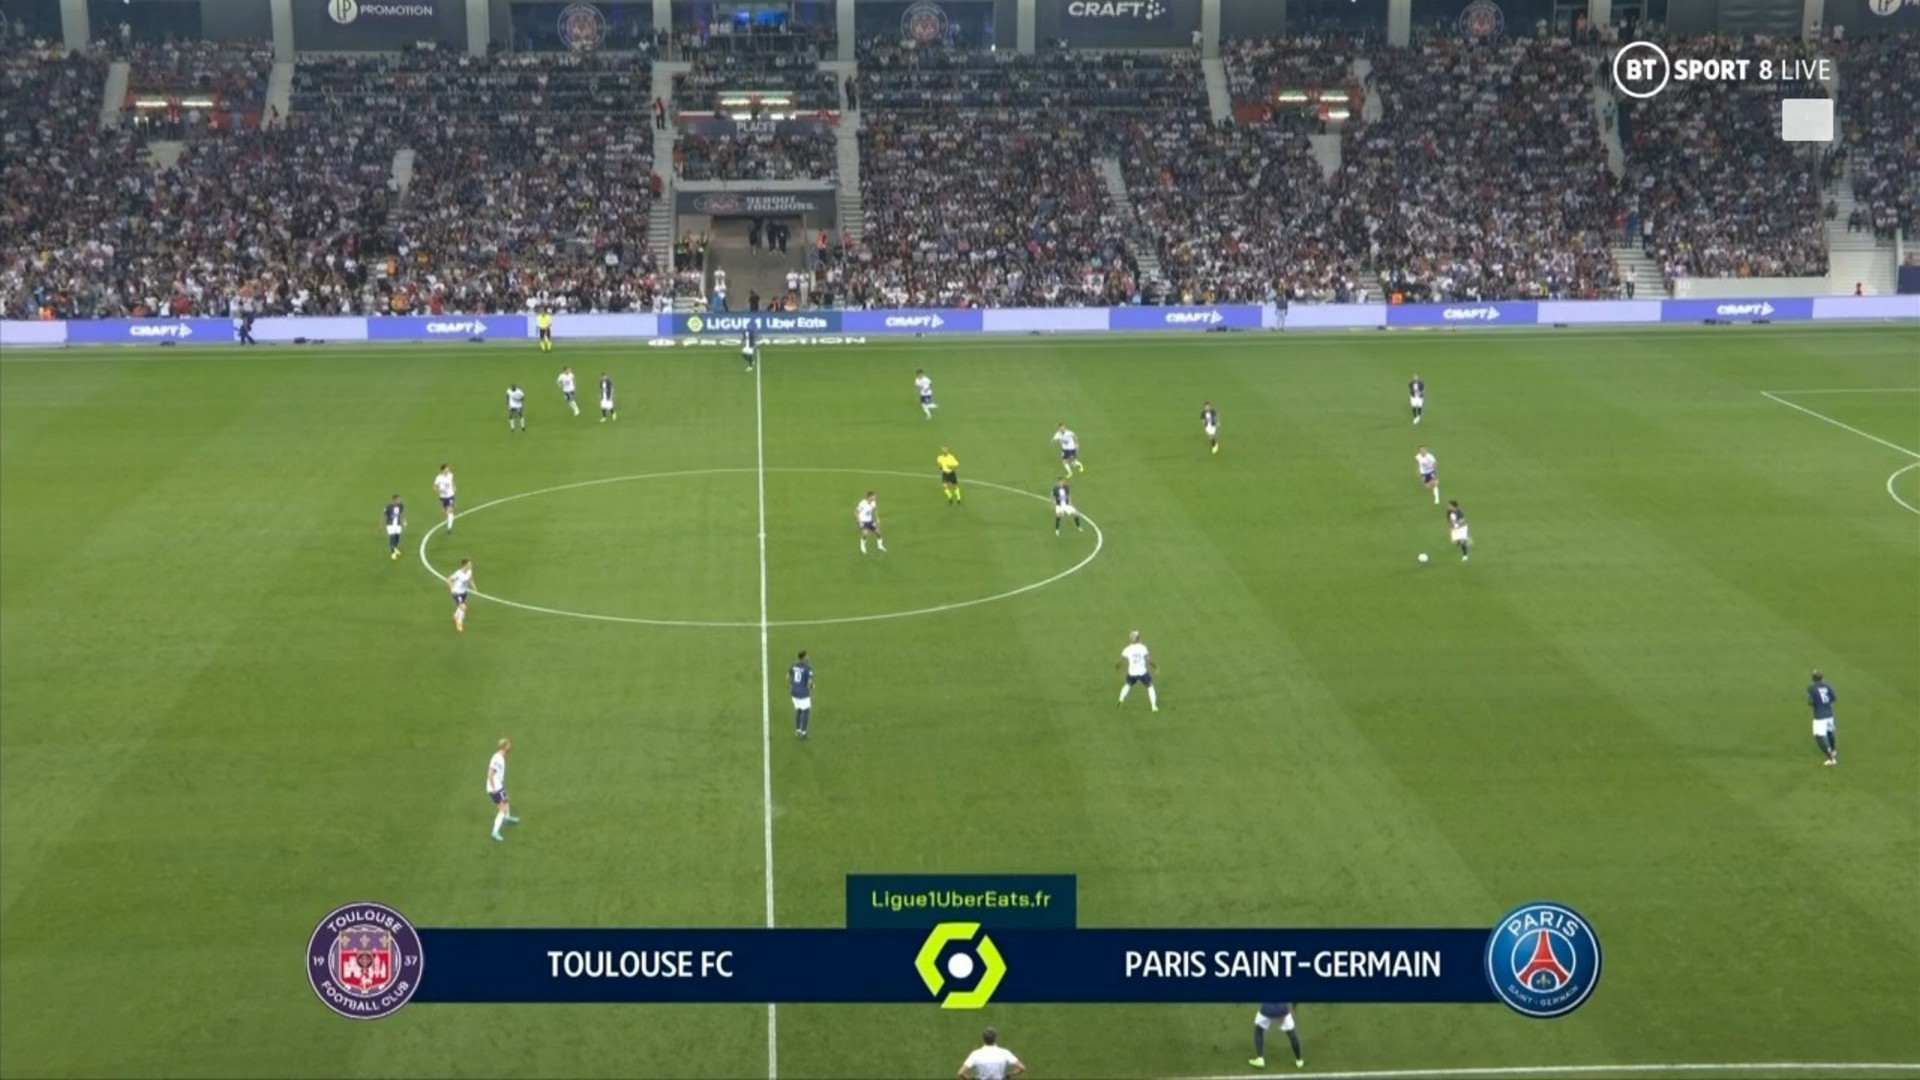 Ligue 1 22/23 - Matchday 5 - Toulouse FC vs Paris Saint-Germain - 31/08/202...